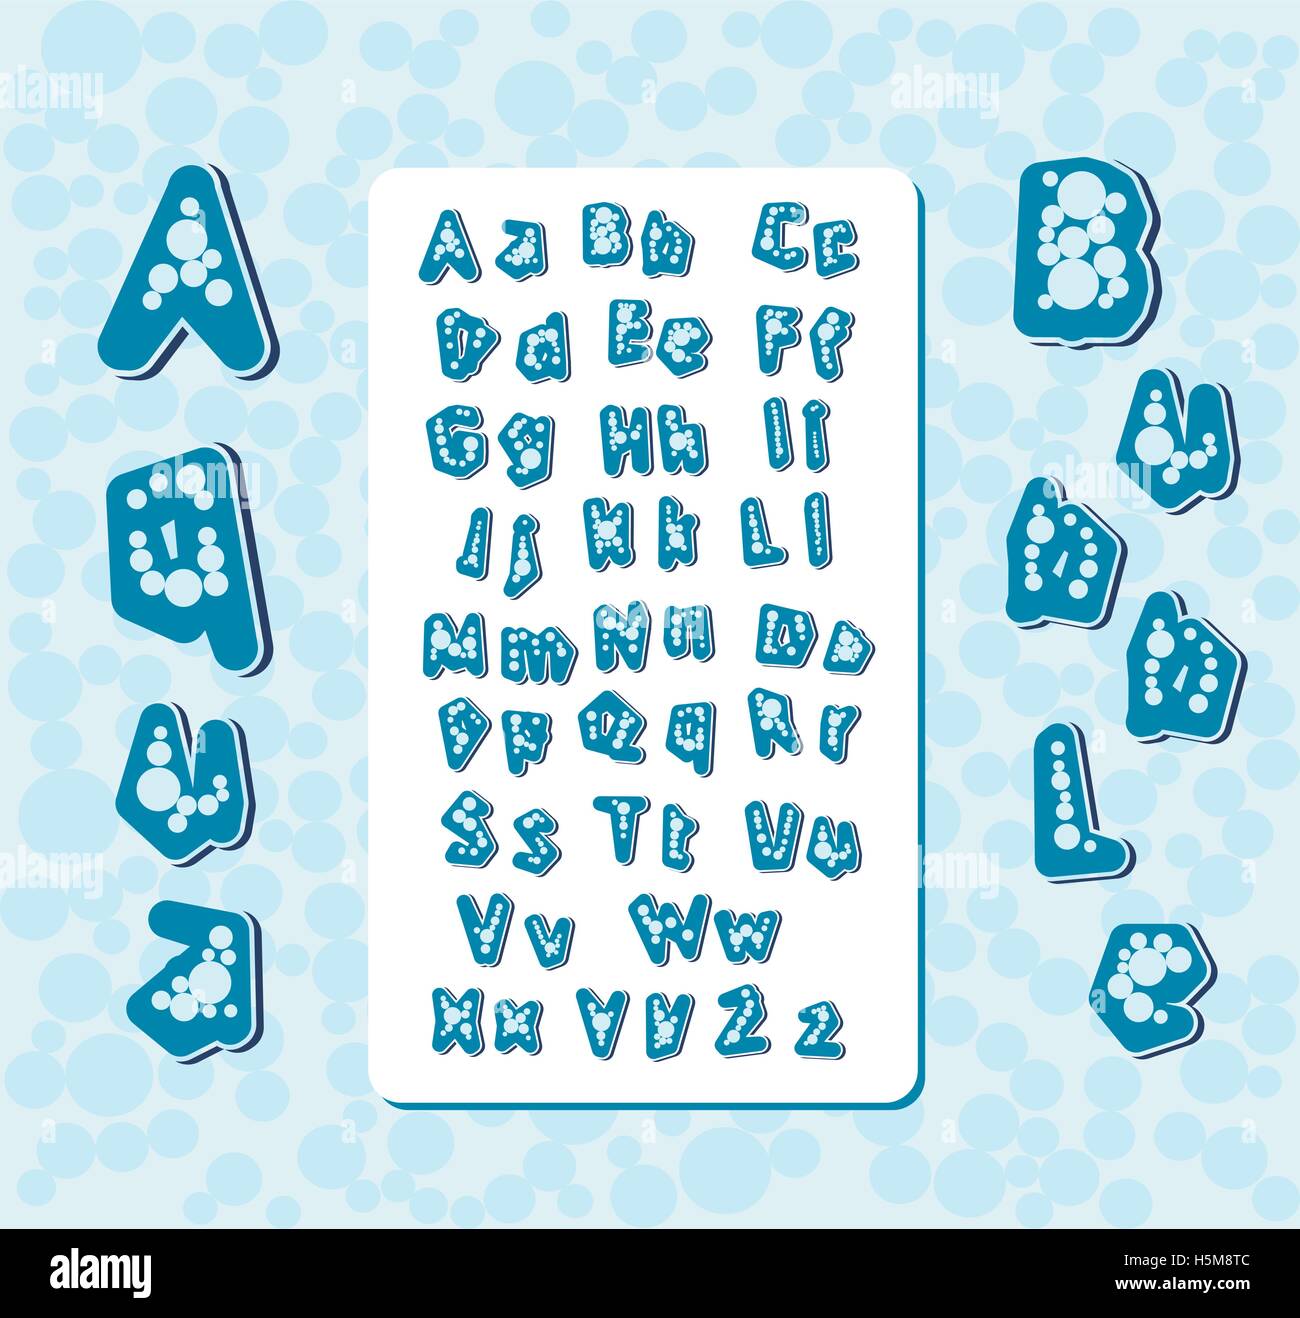 Aqua Bubble stilisiert handgeschriebene Briefe englische Alphabet Zeichen Vektor-illustration Stock Vektor